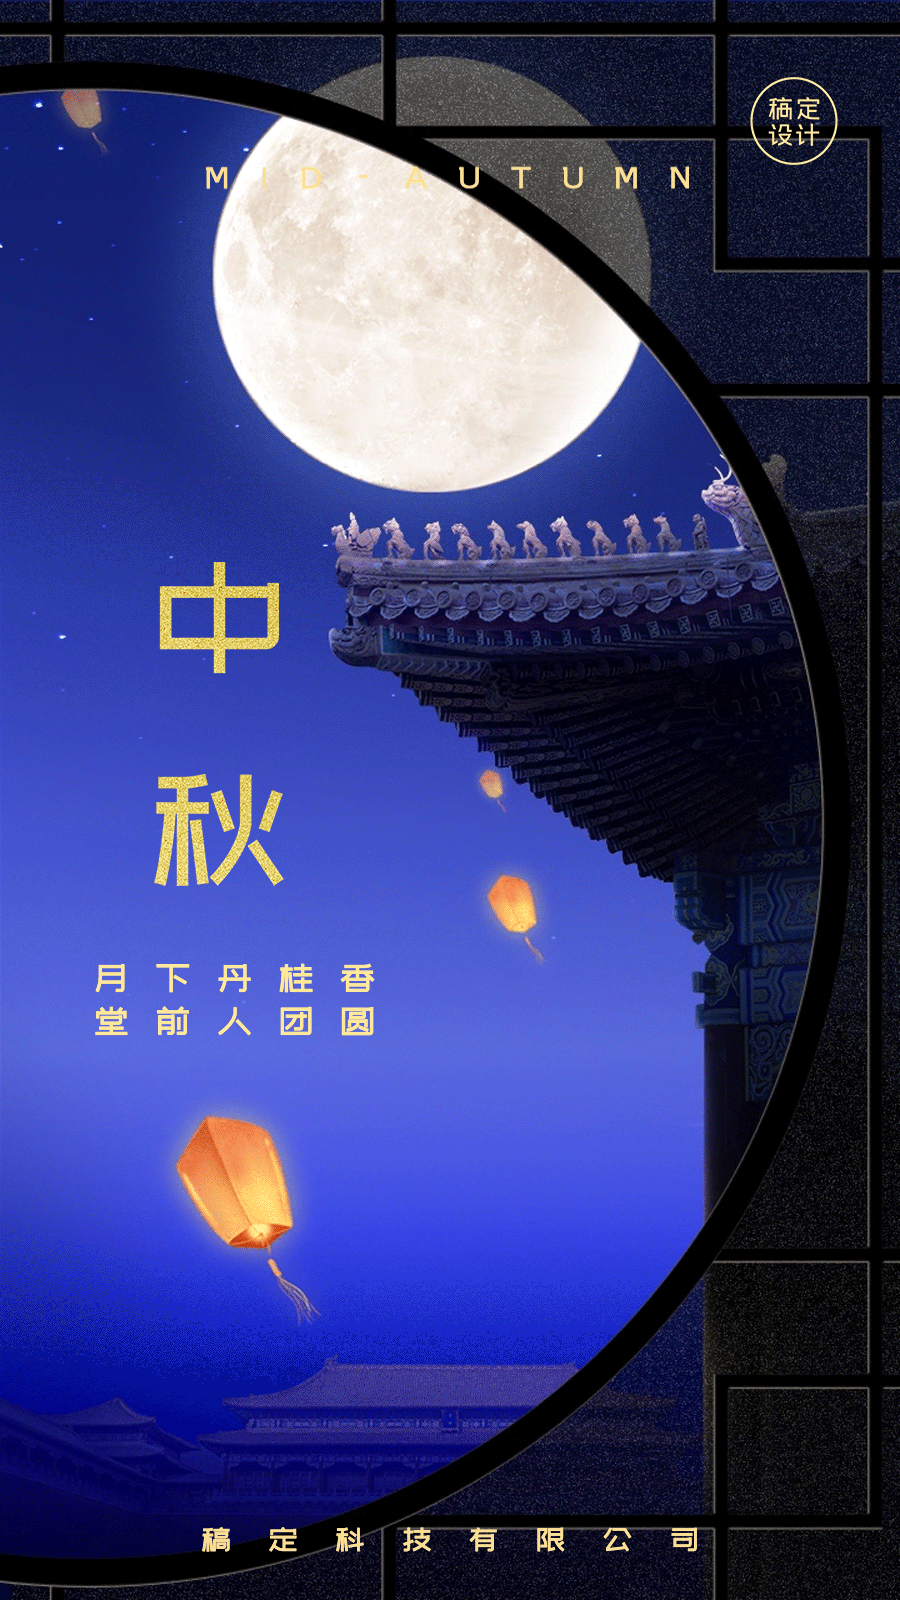 中秋节节日问候祝福动态海报预览效果